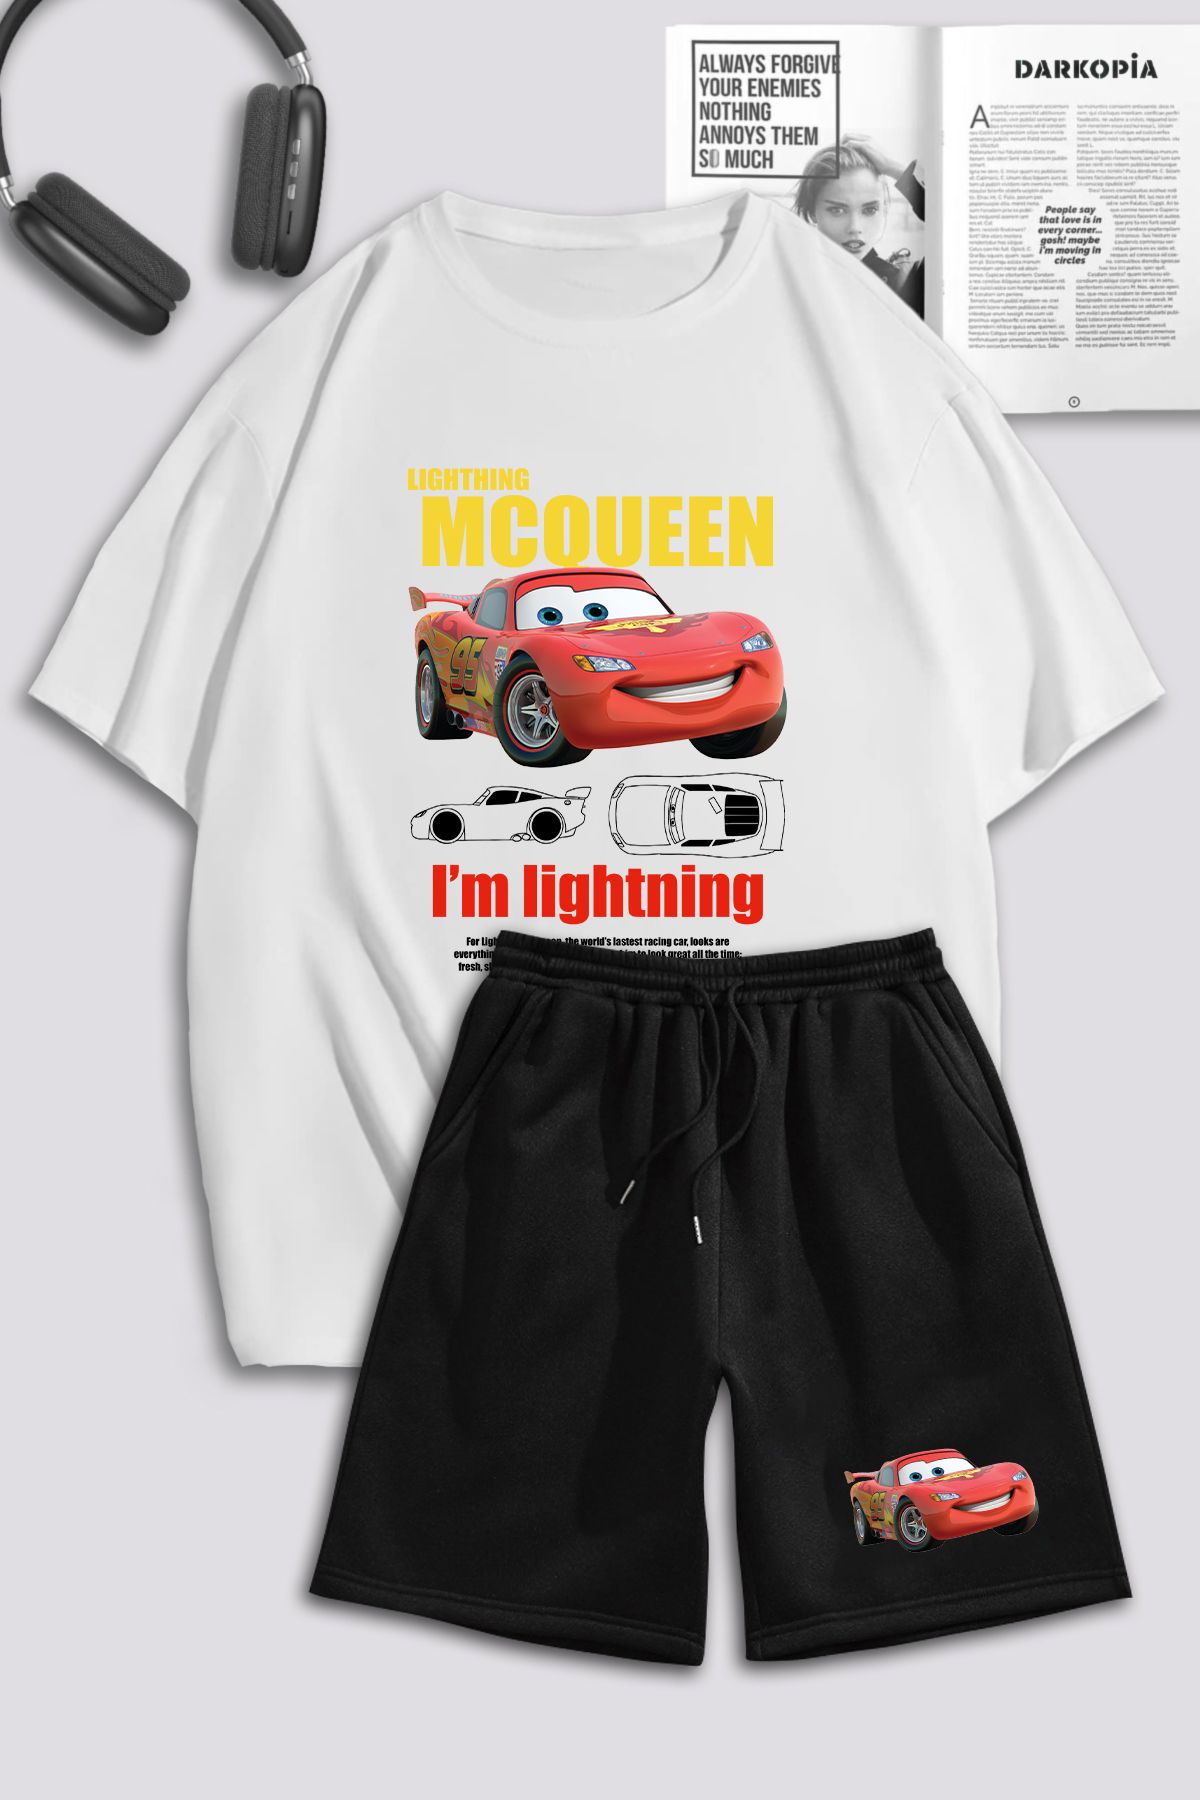 macklin Unisex Kadın Şimşek McQueen Cars Baskılı Özel Tasarım Oversize Tshirt Ve Şort Eşofman Takımı